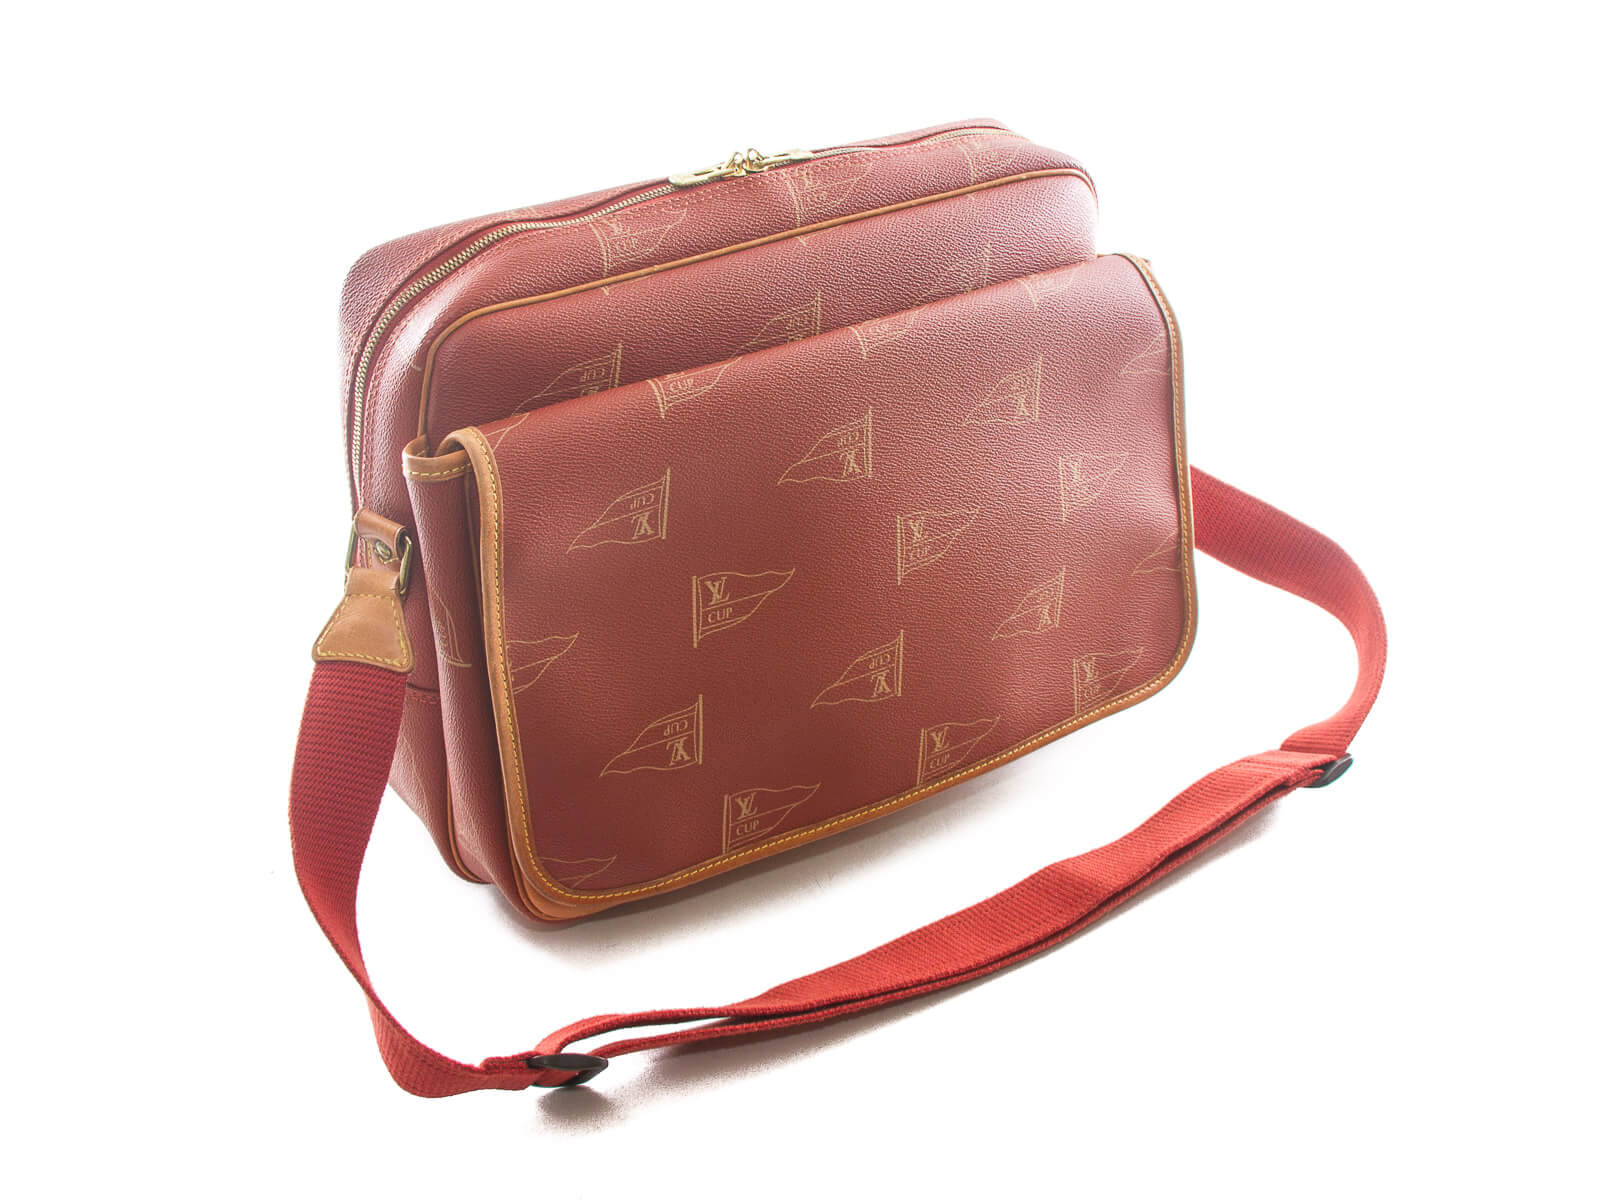 Authentic Louis Vuitton messenger bag